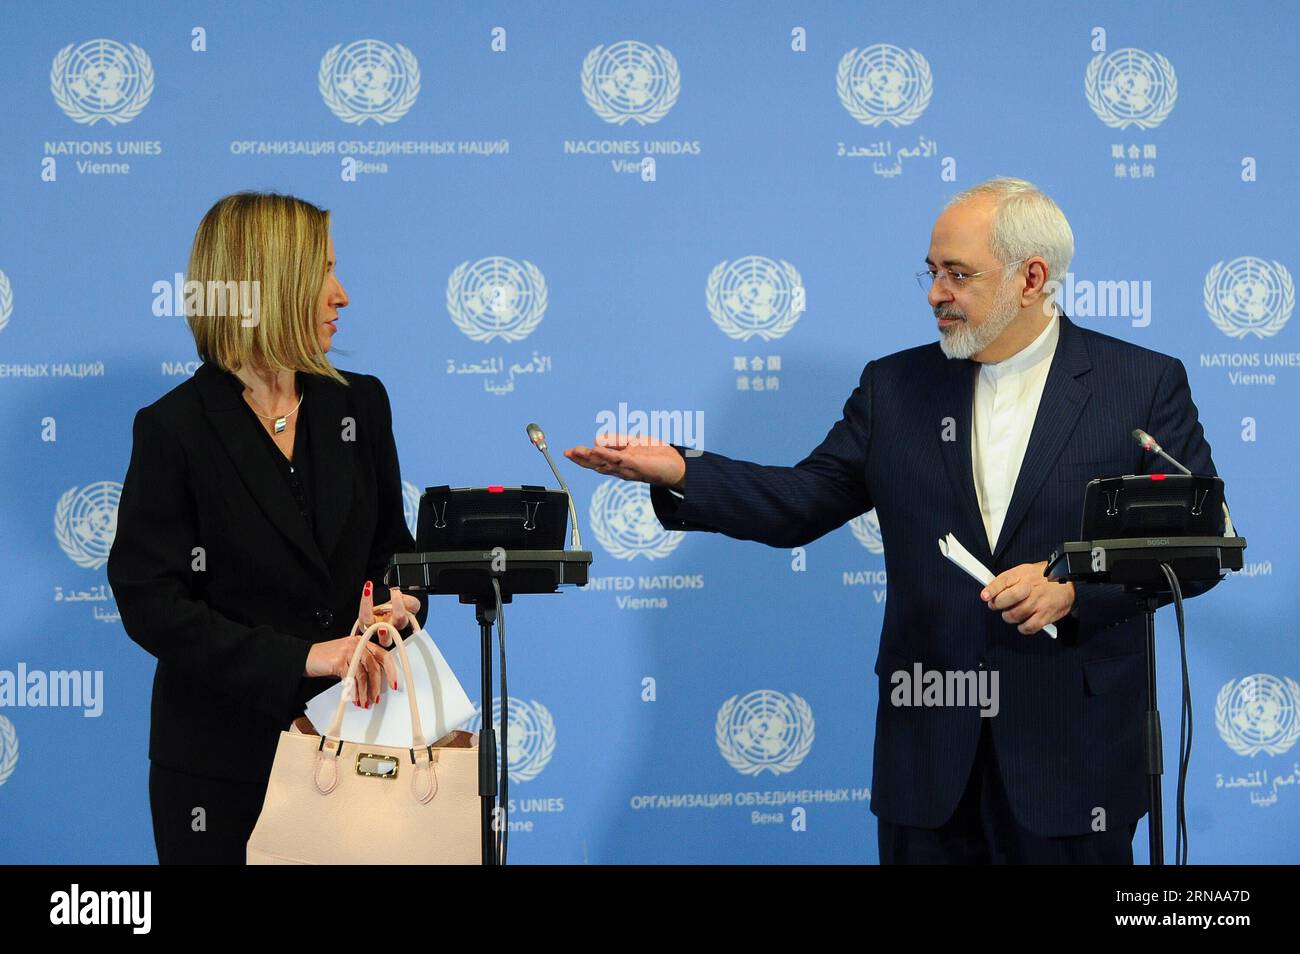 Il ministro degli Esteri iraniano Mohammad Javad Zarif(R) e il capo della politica estera dell'Unione europea (UE) Federica Mogherini partecipano a una conferenza stampa a Vienna, in Austria, il 16 gennaio 2016. Sabato sera l'Unione europea (UE) e l'Iran hanno annunciato congiuntamente il giorno di attuazione dello storico accordo nucleare dopo che l'Agenzia internazionale per l'energia atomica (AIEA) ha confermato che tutte le fasi di preparazione sono state completate da Teheran. ) (CORREZIONE)ATTUAZIONE DELL'ACCORDO NUCLEARE AUSTRIA-VIENNA-UE-IRAN QianxYi PUBLICATIONxNOTxINxCHN ministri degli Esteri iraniani Mohammad Javad Zarif r e politica estera dell'Unione europea Foto Stock